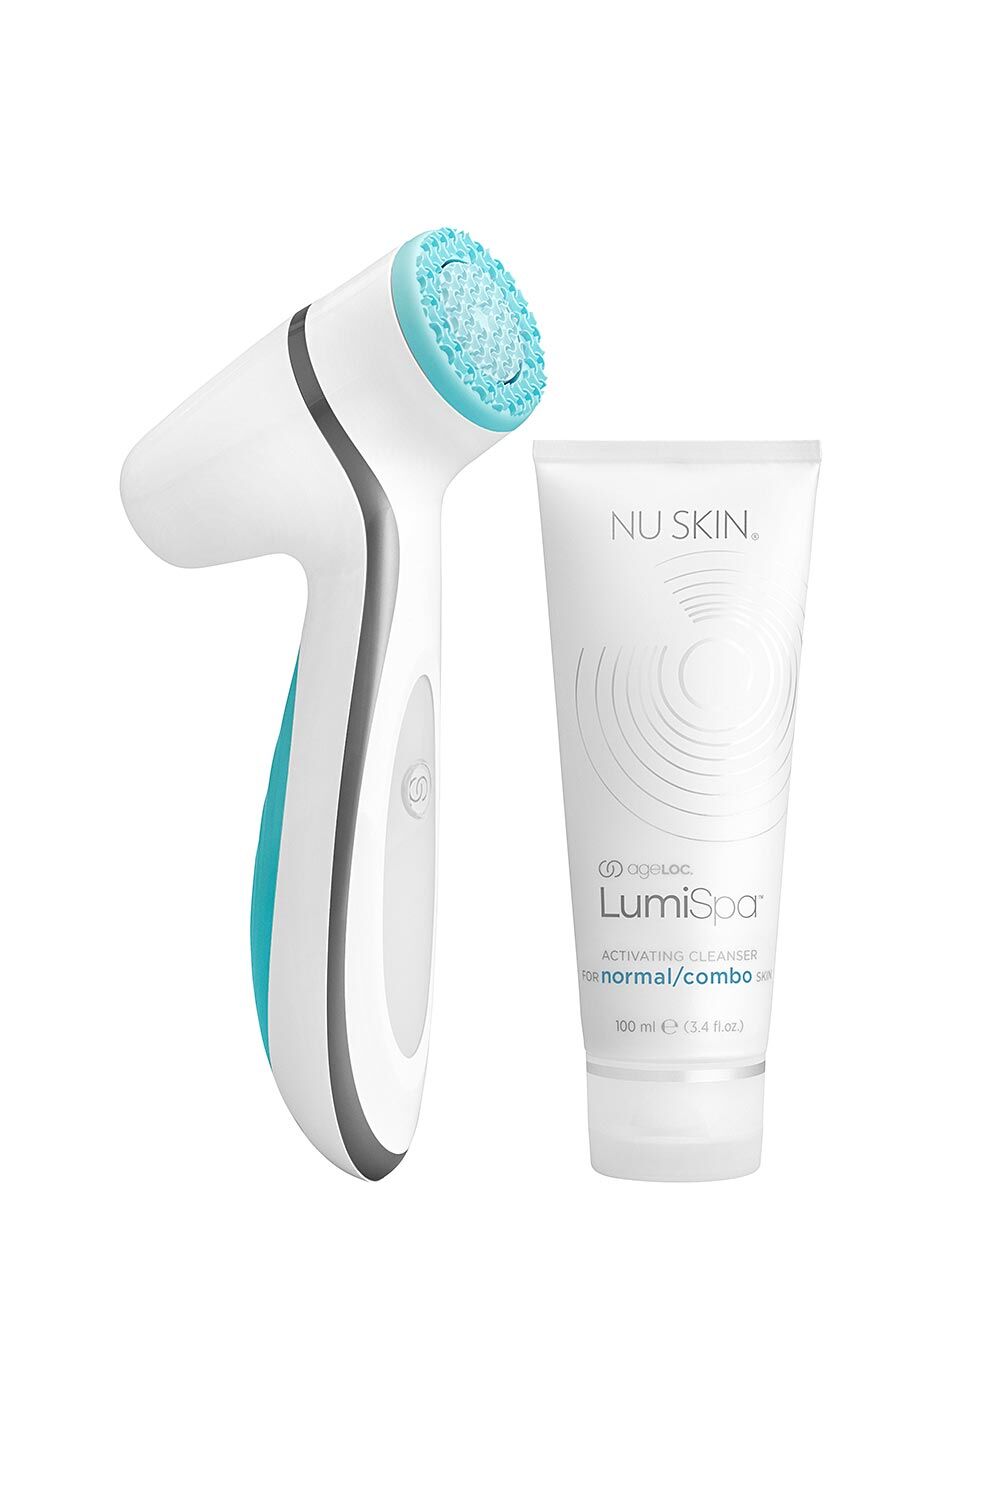 Nu Skin ageLOC LumiSpa Beauty Device Face Cleansing Kit - sada pro normální až smíšenou pleť